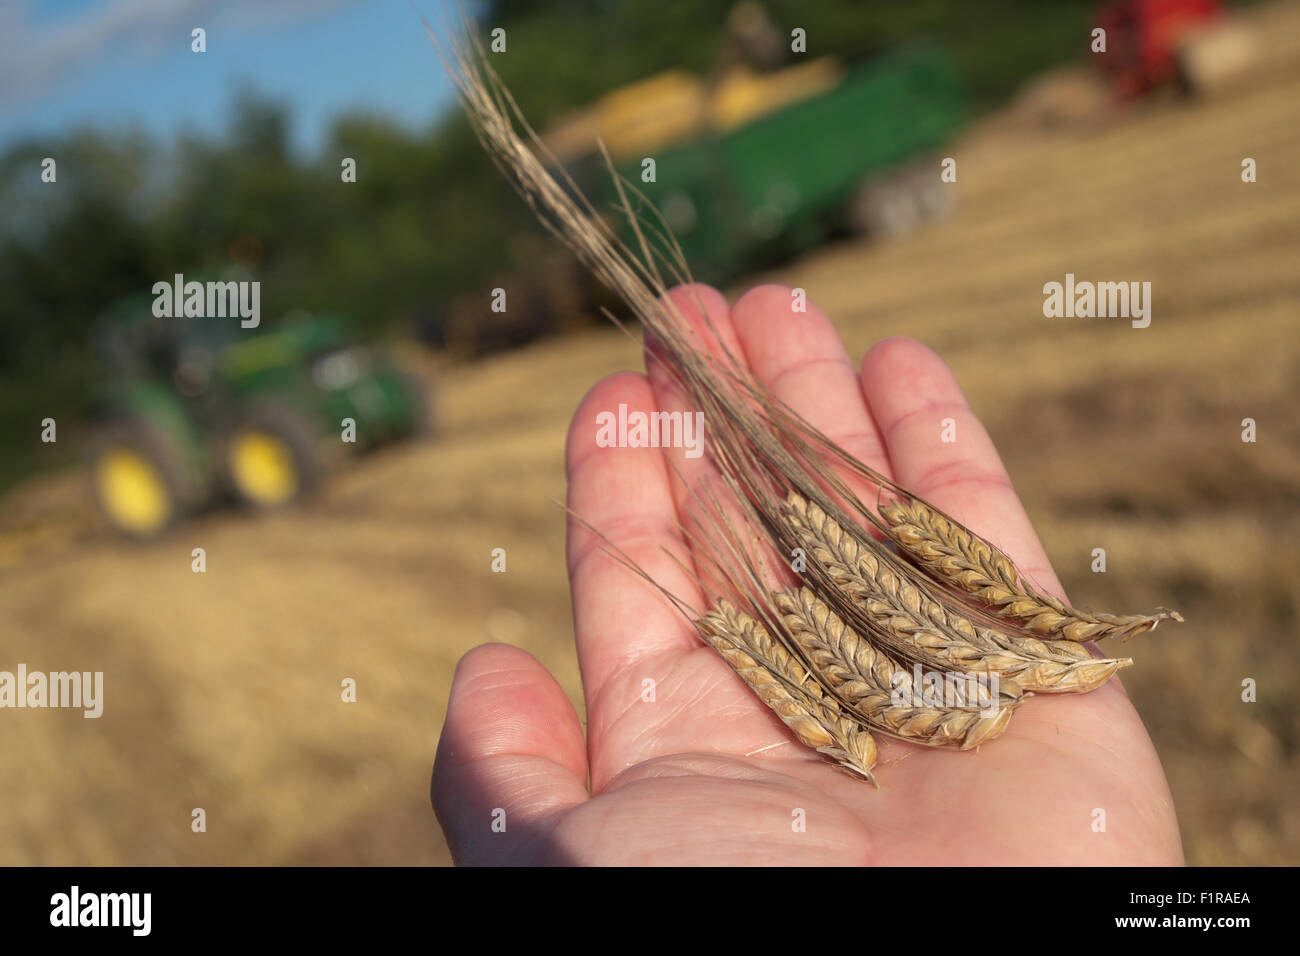 Titley, Herefordshire, England. 6. September 2015. Feine trockene Wetter ermöglichte es Bauern, ihre Getreide zu ernten - Bauern inspiziert der letztes seine Gerste Ernte in frühen Abendsonne. Stockfoto